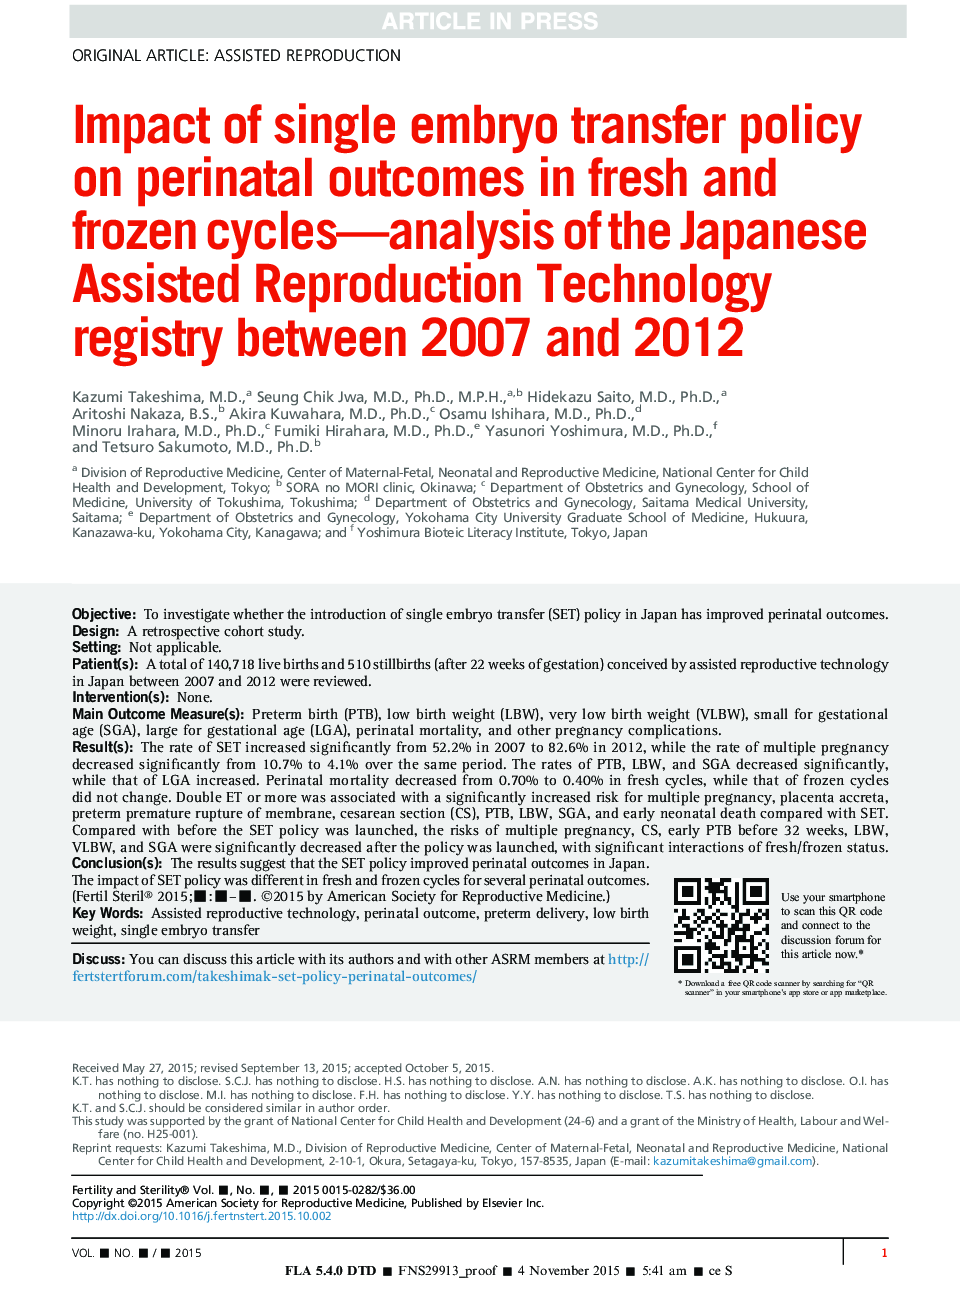 تأثیر سیاست انتقال تک جنین بر نتایج پیش از تولد در دوره های تازه و یخ زده- تجزیه و تحلیل رجیستری تکنولوژی تولید مجدد ژاپنی در سال های 2007 تا 2012 